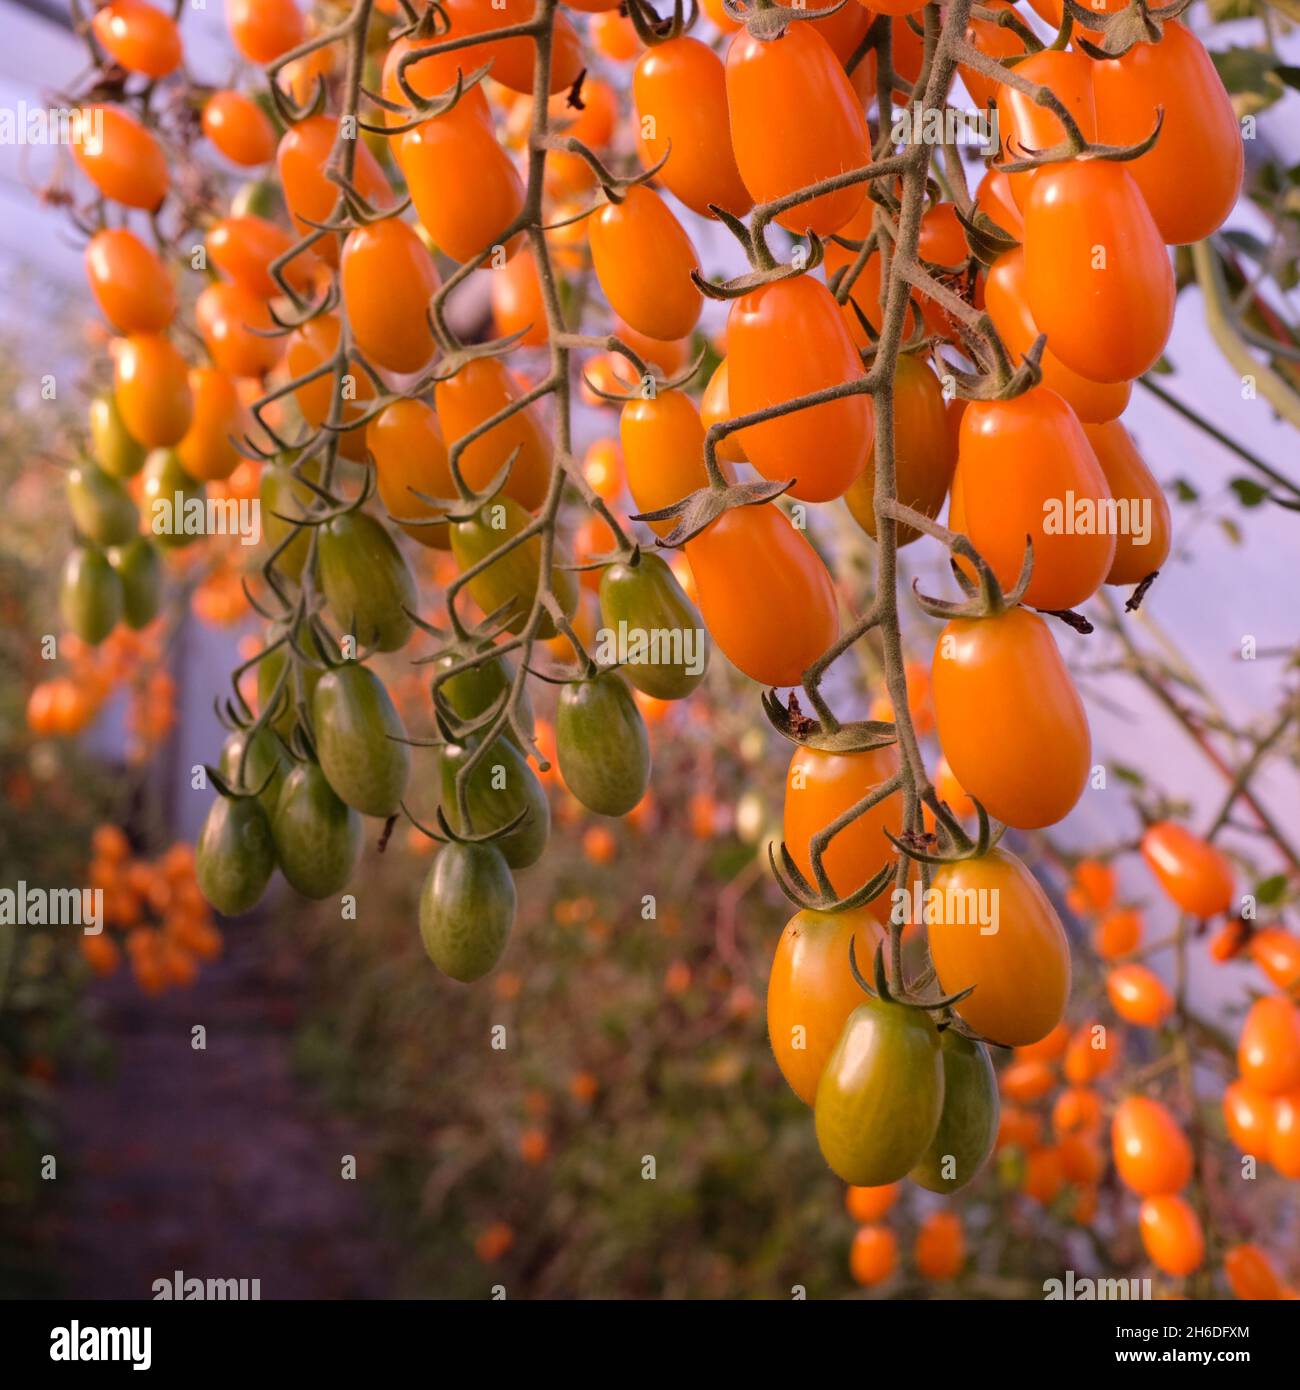 Yellow plum tomatoes Stock Photo